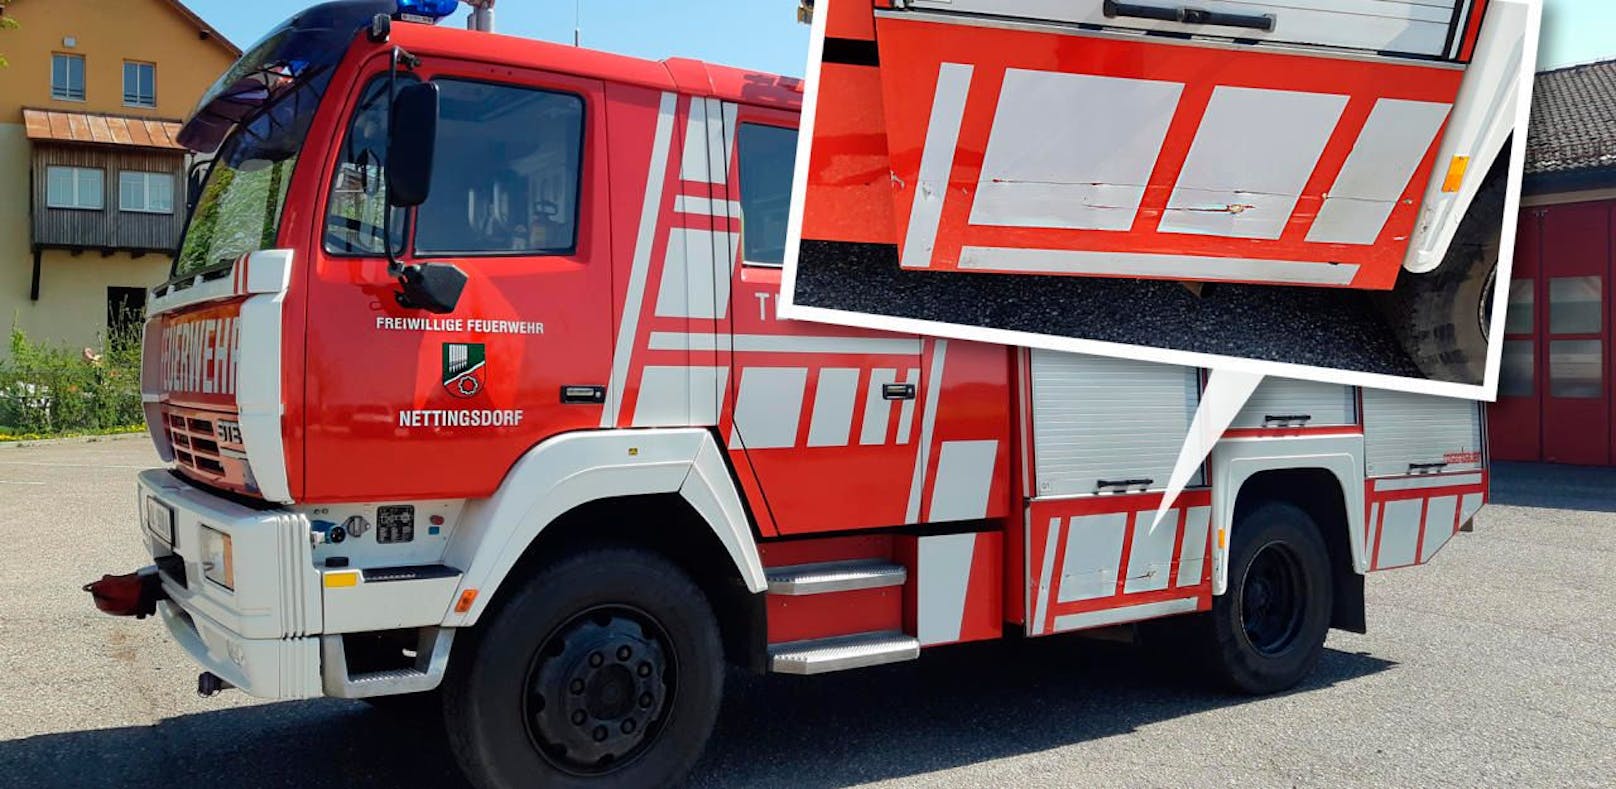 In Nettingsdorf krachte ein Alkolenker gegen ein Feuerwehrauto, richtete rund 10.000 Euro Schaden an. 